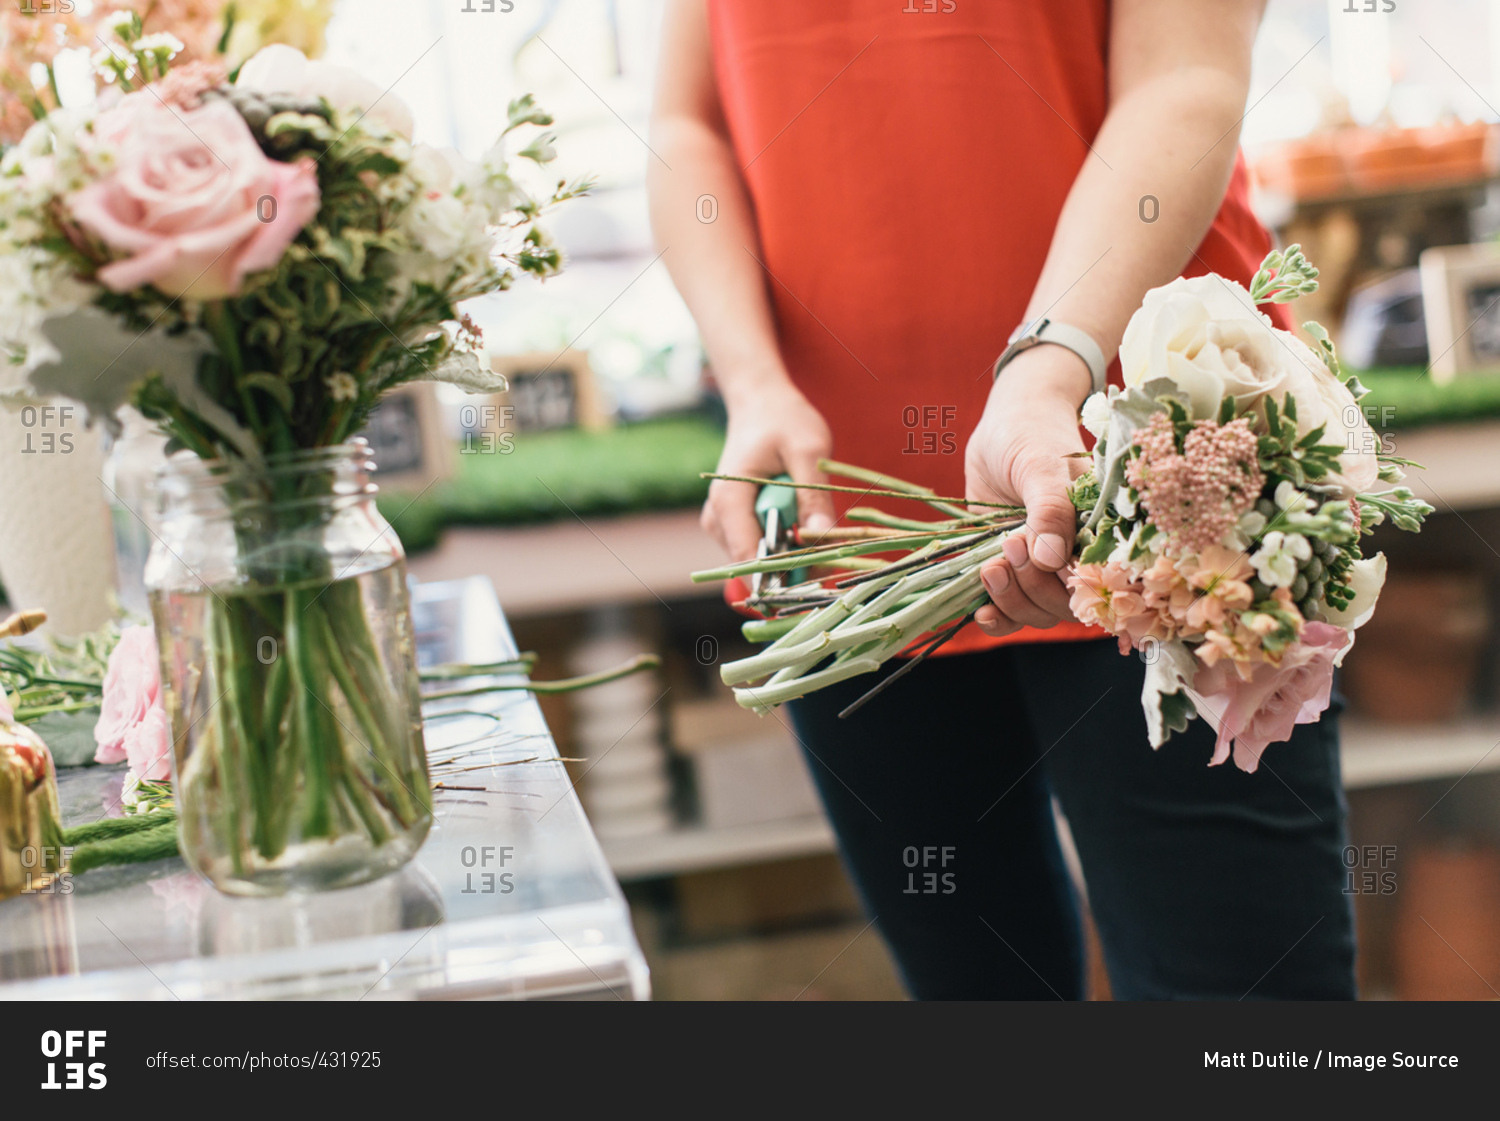 Florist arranging bouquet in flower shop, mid section